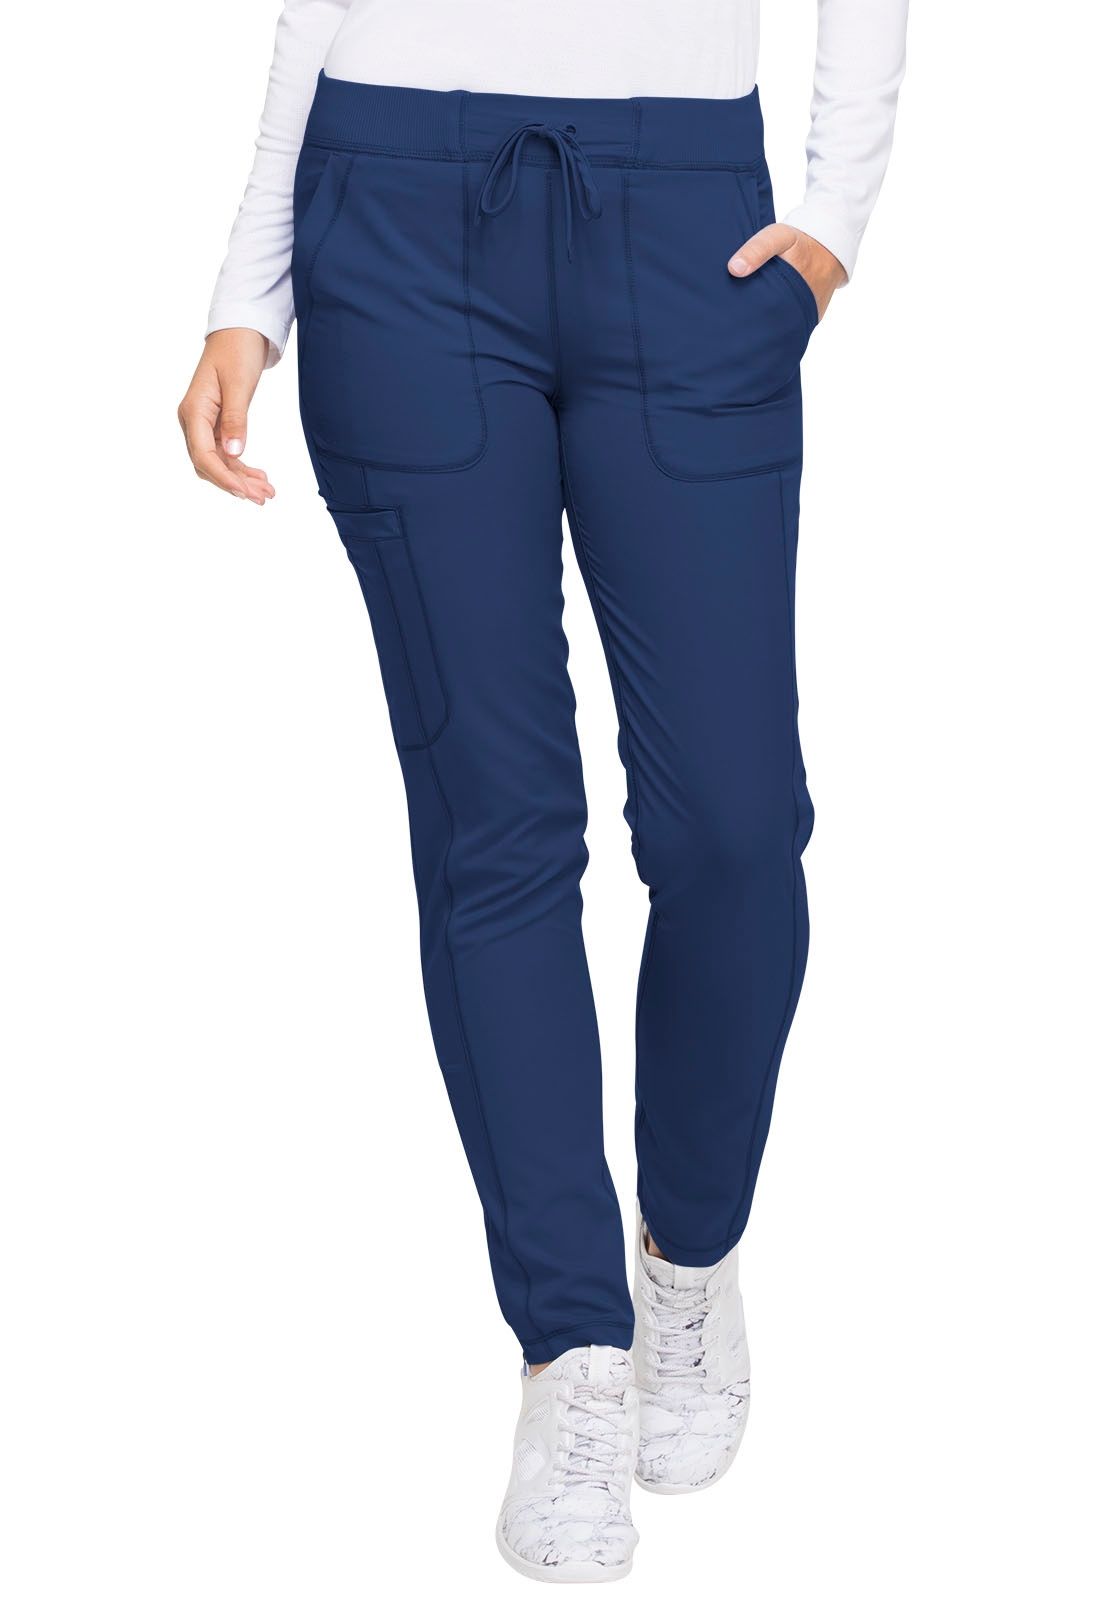 Jockey® Scrubs Cargo Pants - Women's Plus 2249 | Jockey scrubs, Cargo pants  women, Pants for women